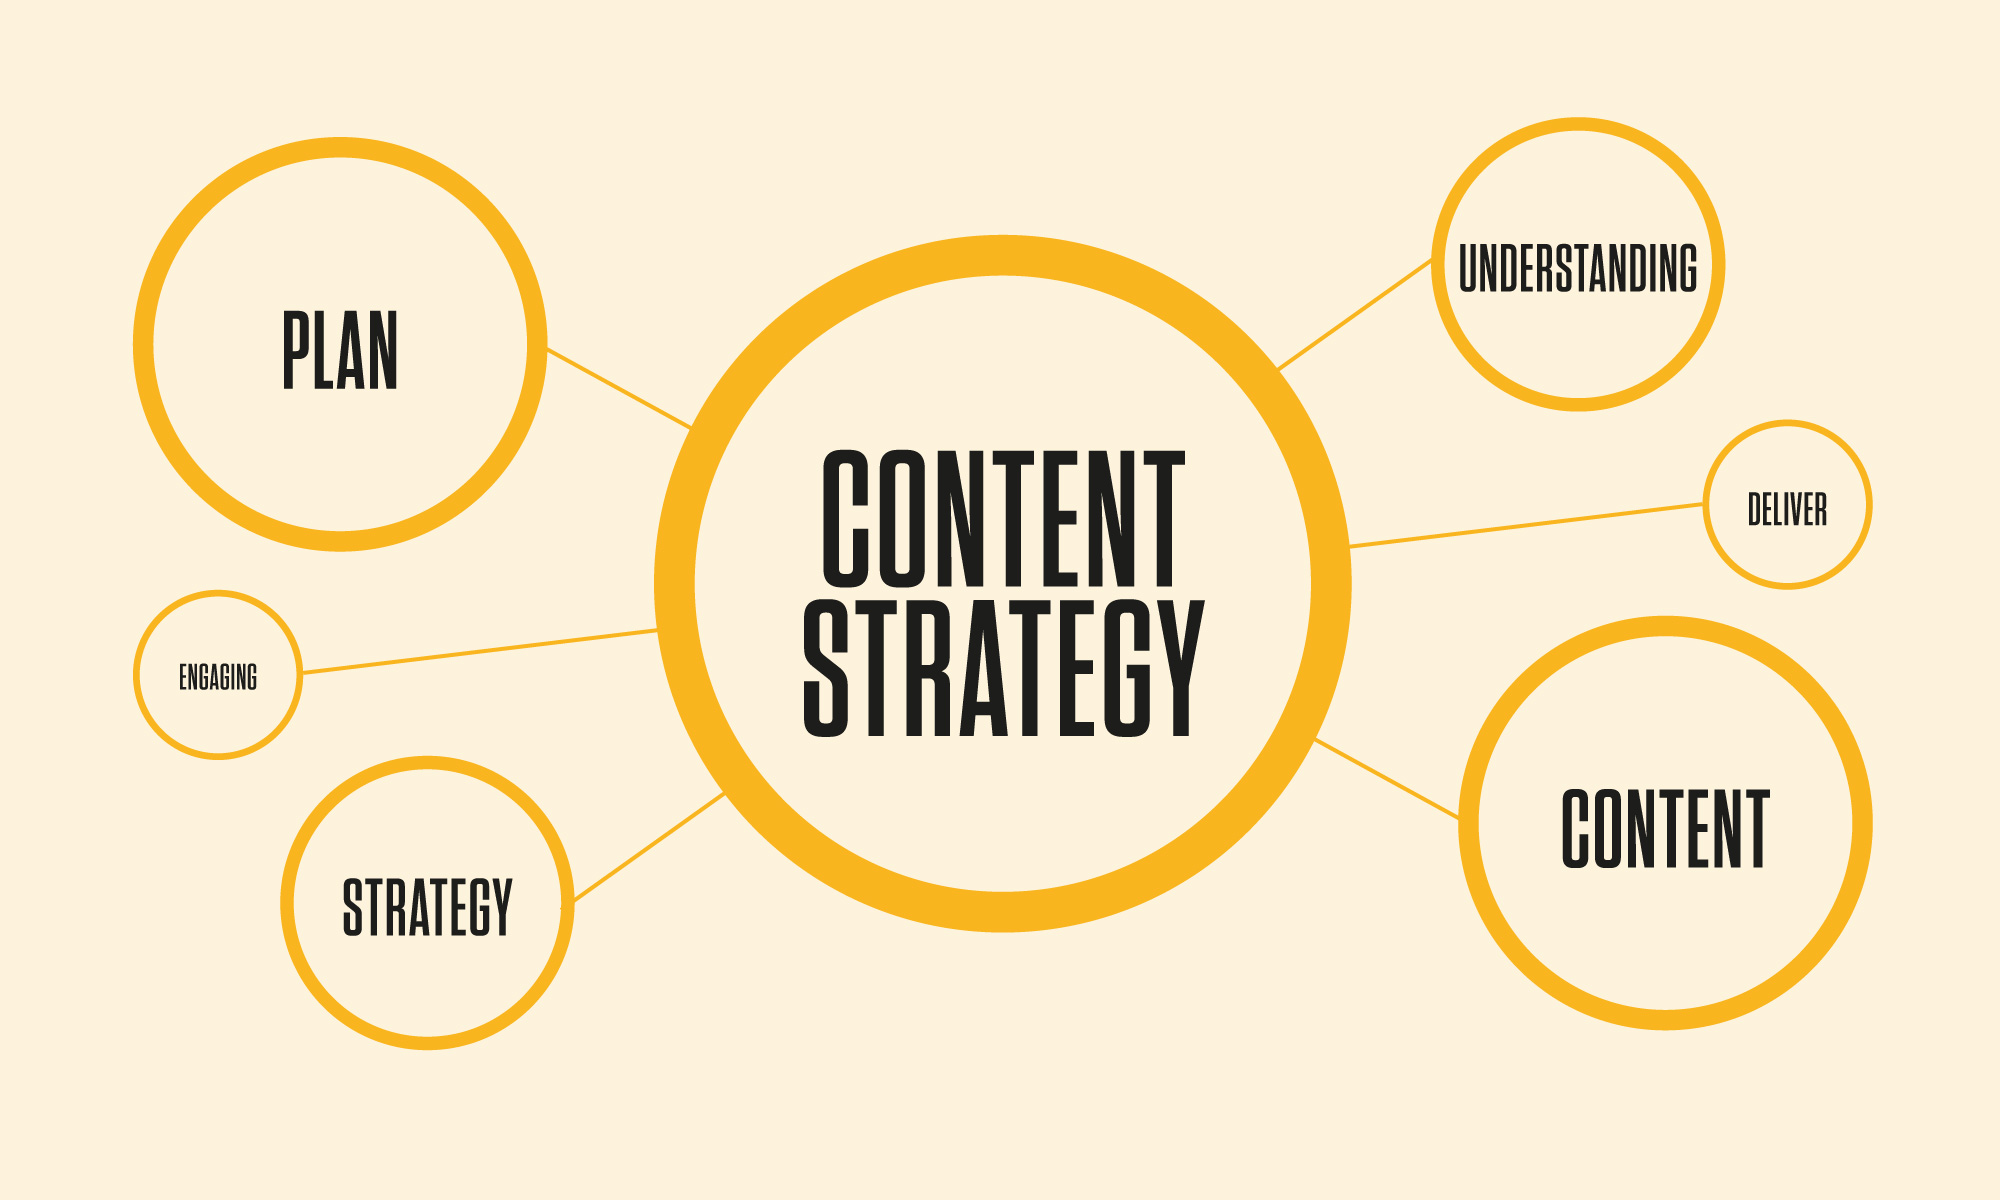 Content strategy gắn liền với một mục đích cụ thể là phần chính trong kế hoạch